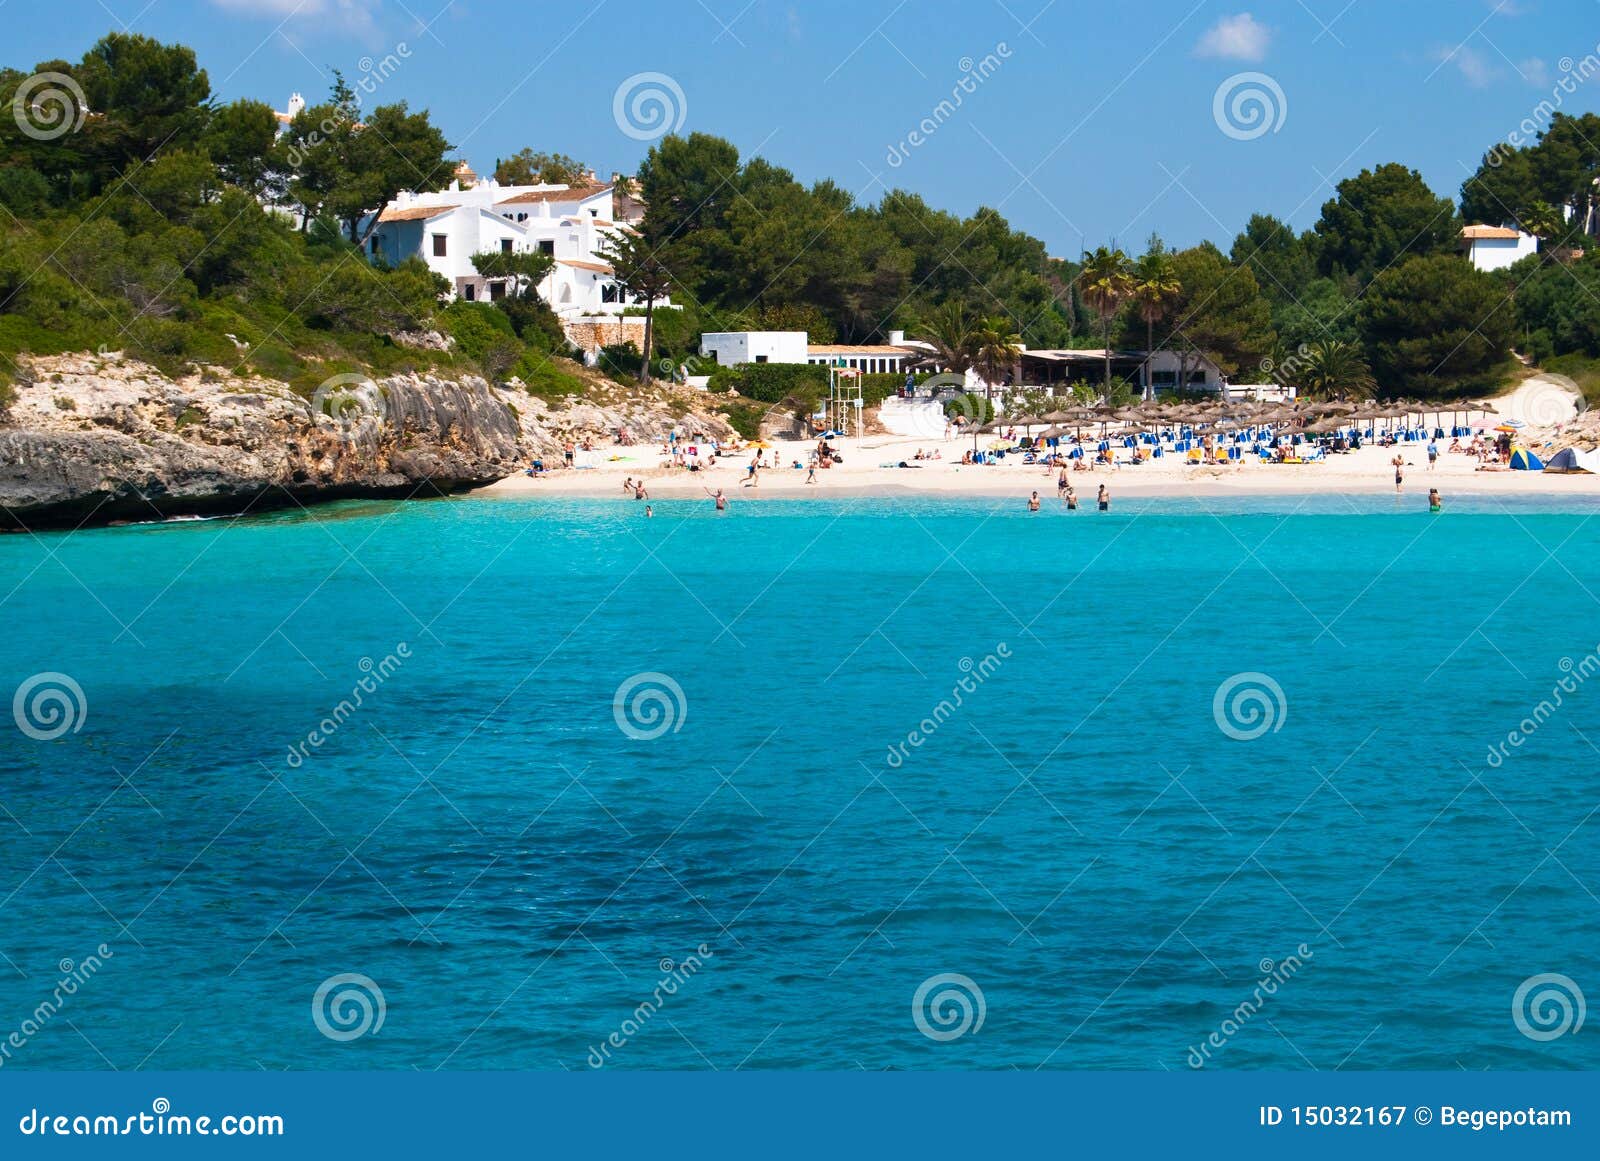 tursquoise water of the sea at cala romantica